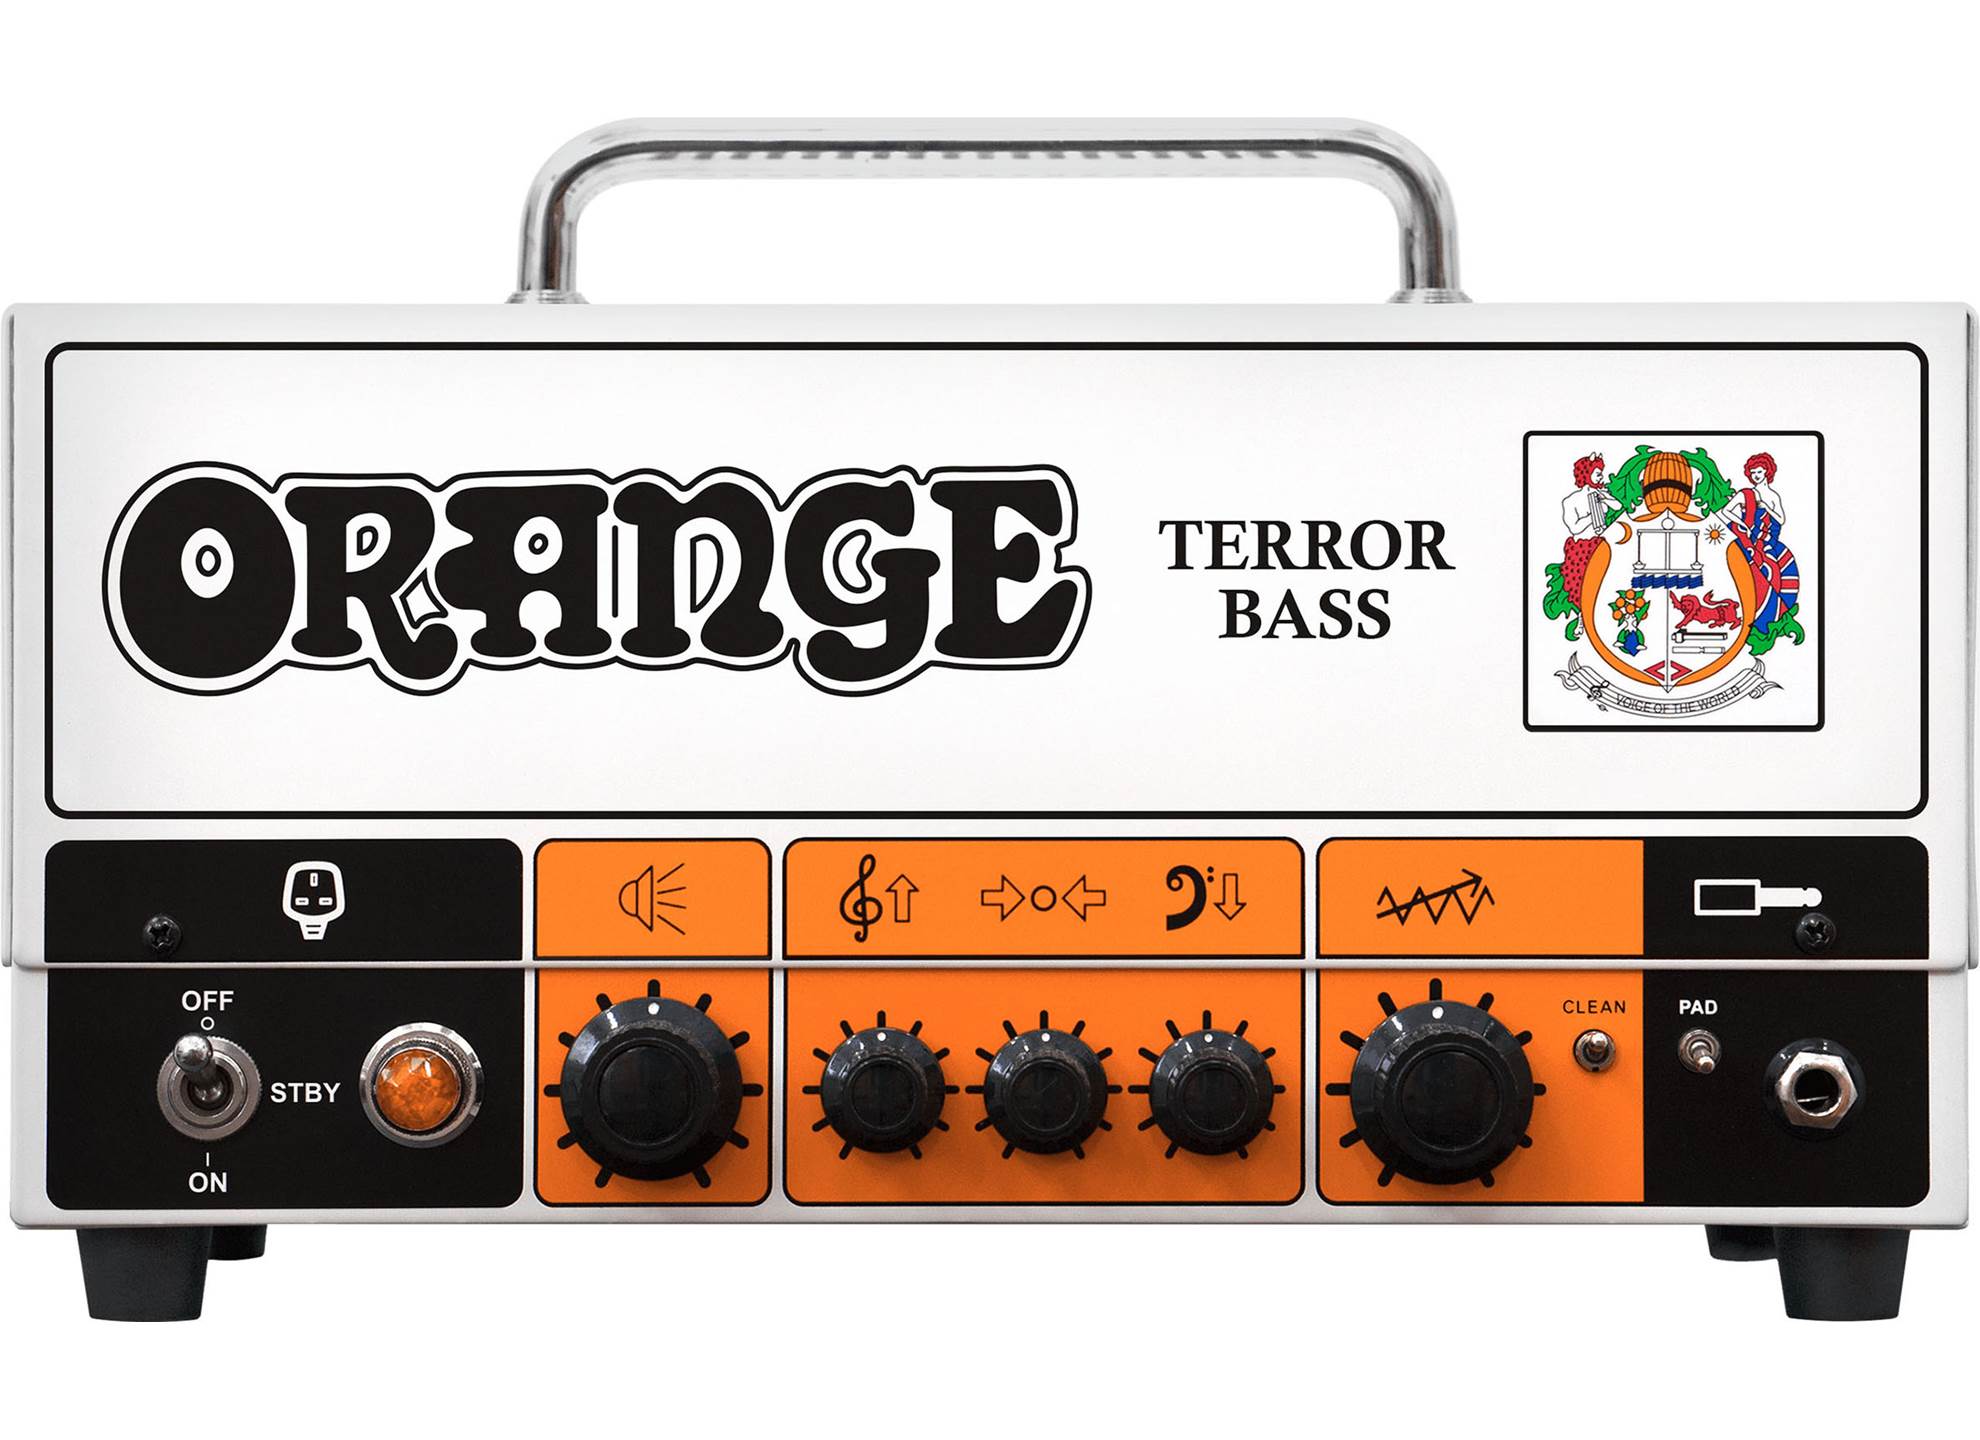 Terror Bass